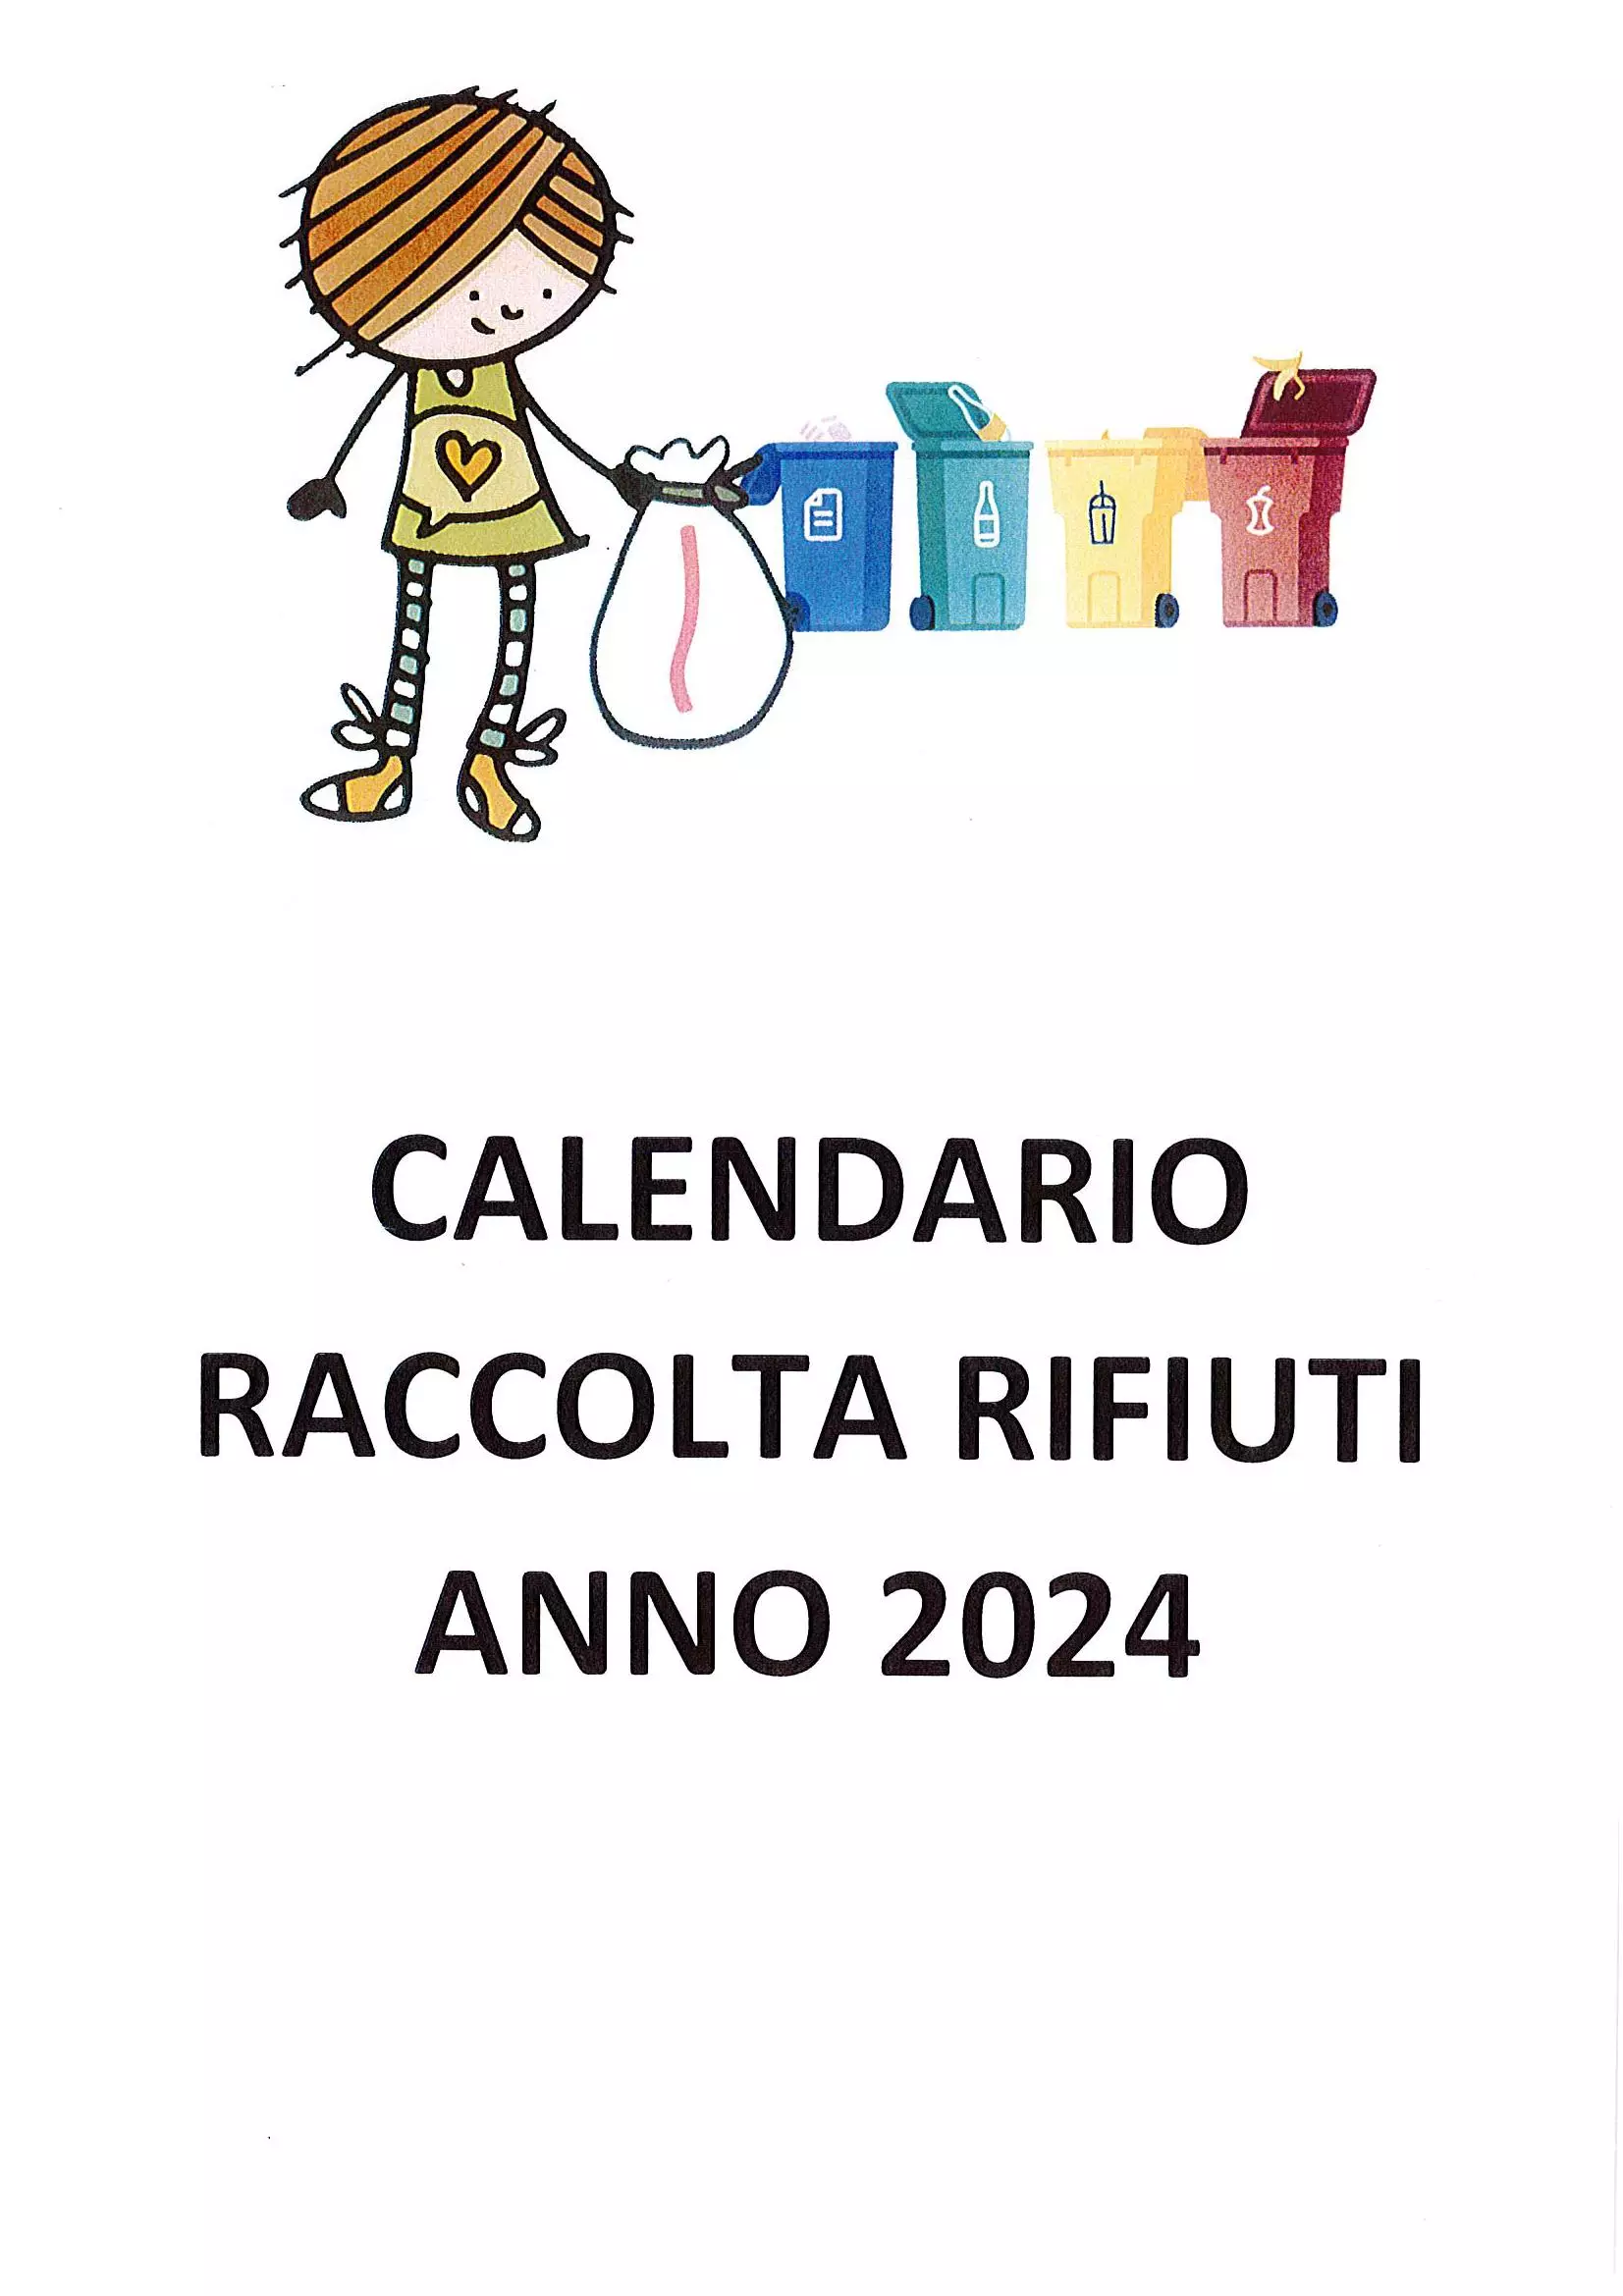 CALENDARIO RACCOLTA RIFIUTI ANNO 2024